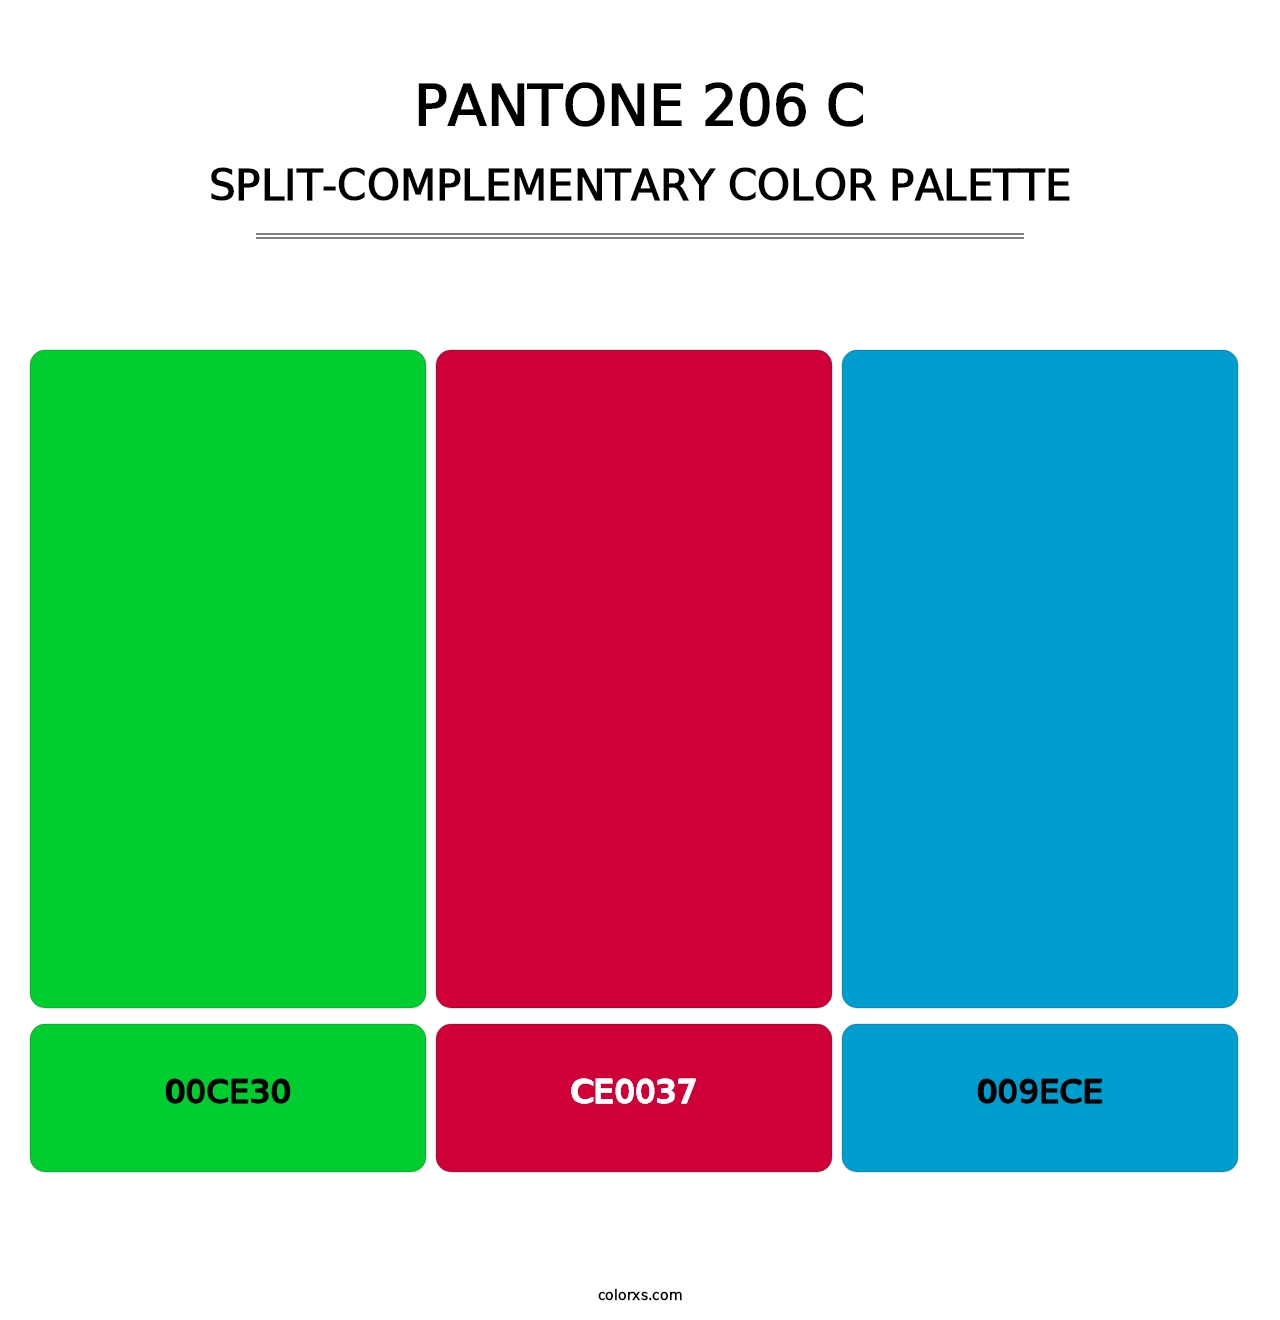 PANTONE 206 C - Split-Complementary Color Palette